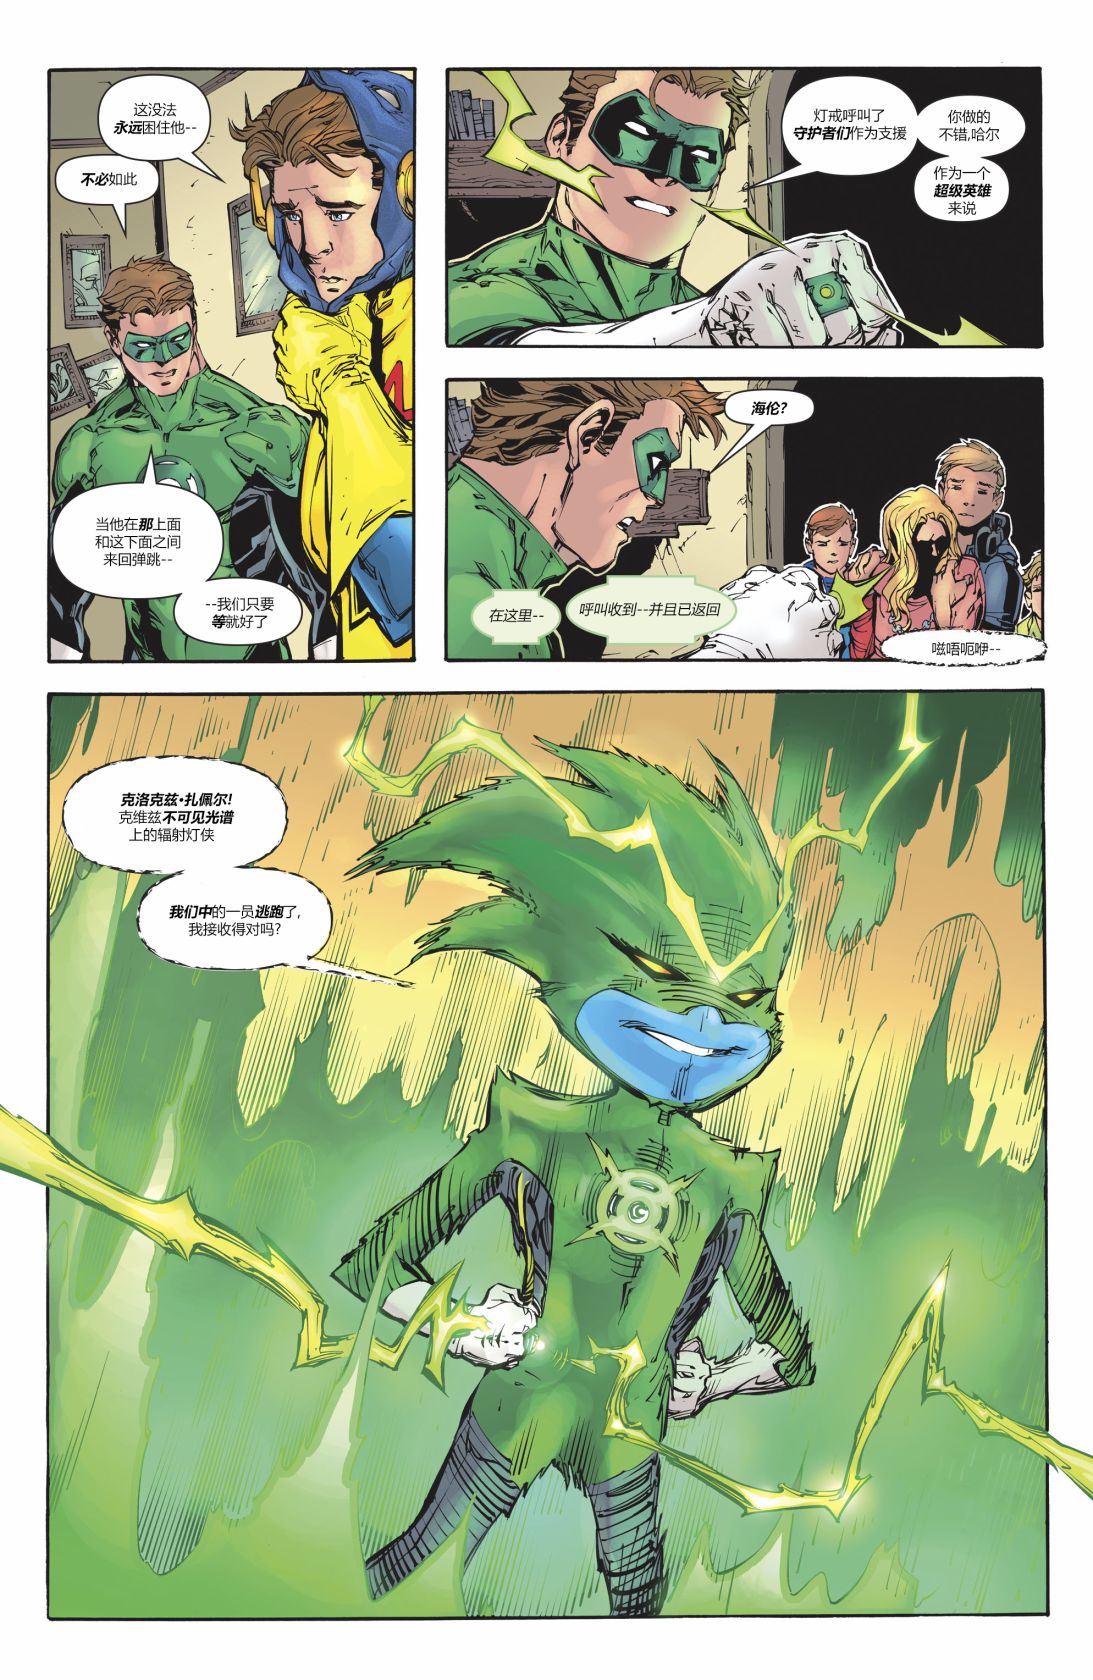 綠燈俠V6 - 年刊#1 - 6